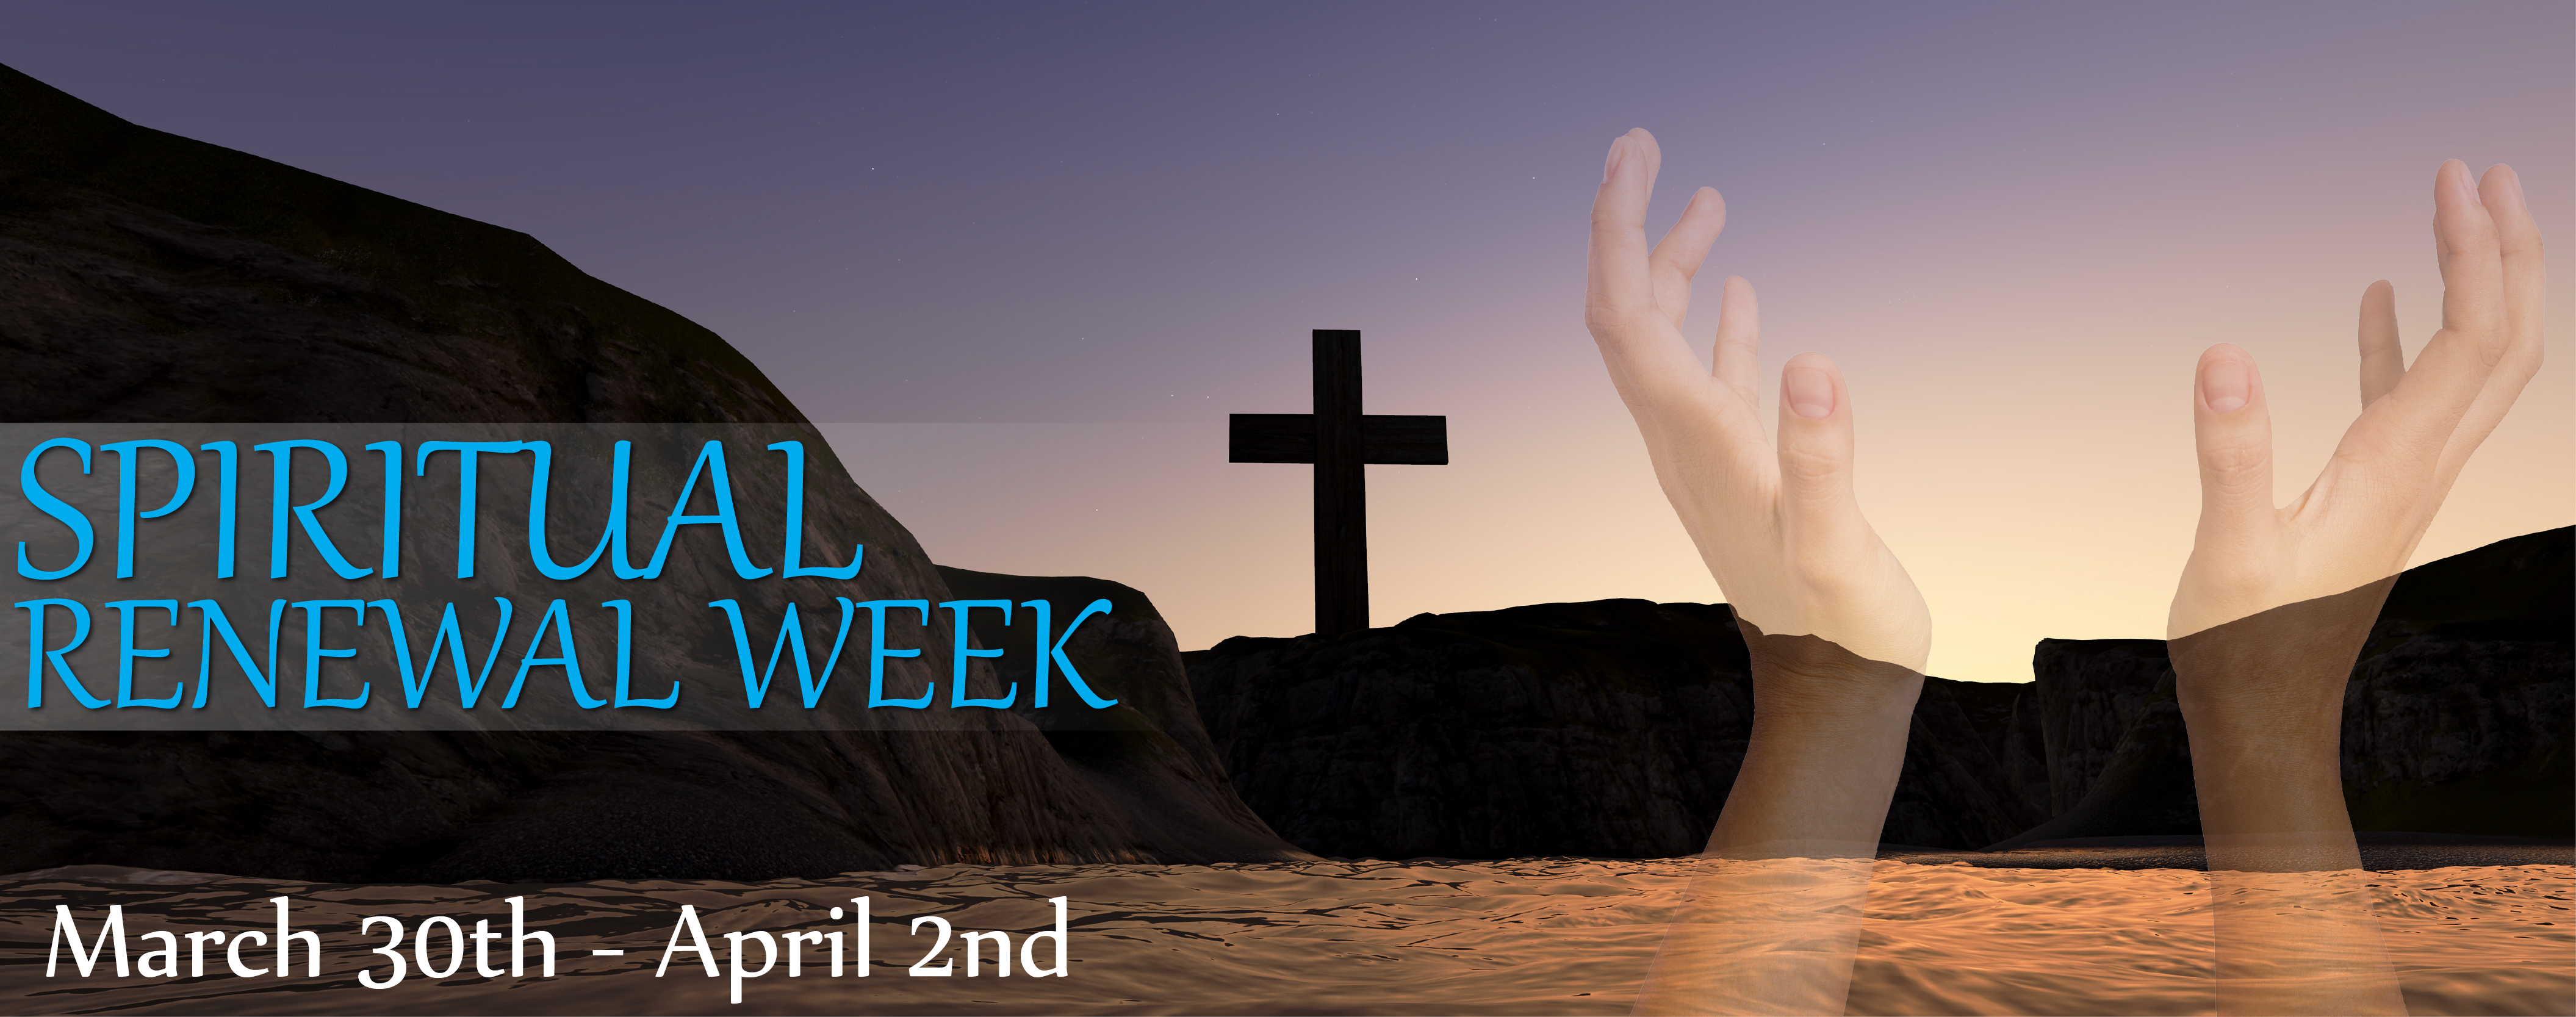 spiritual-renewal-week-01